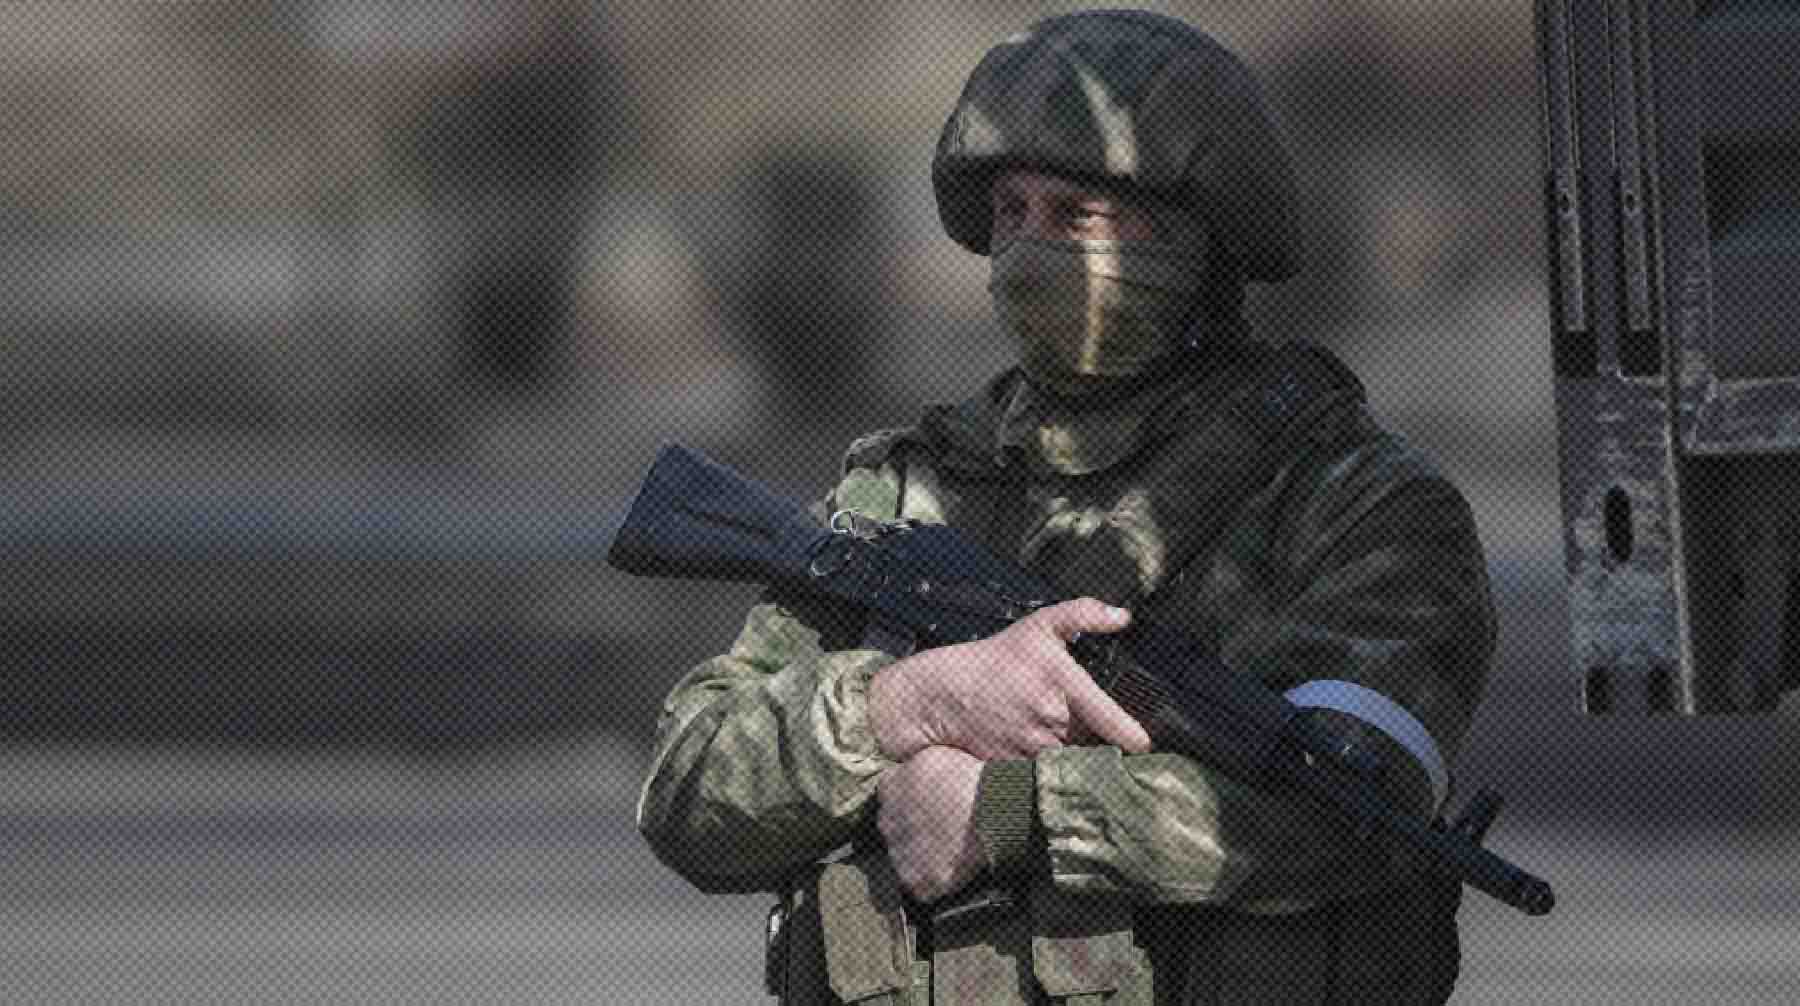 При досмотре у задержанного нашли огнестрельное оружие и боеприпасы Фото: РИА Новости